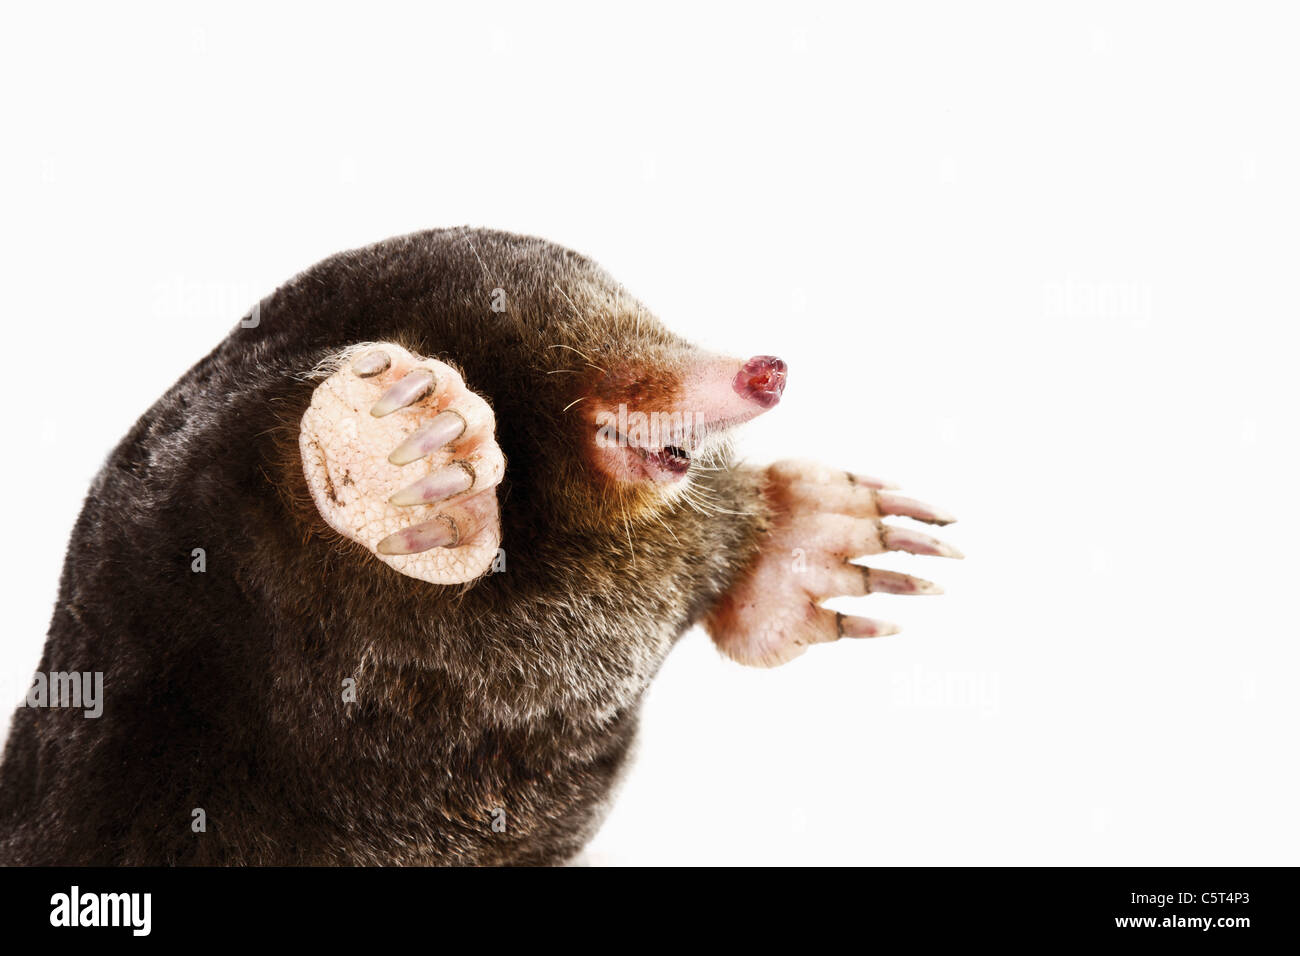 European Mole, Talpa europaea, close-up Stock Photo